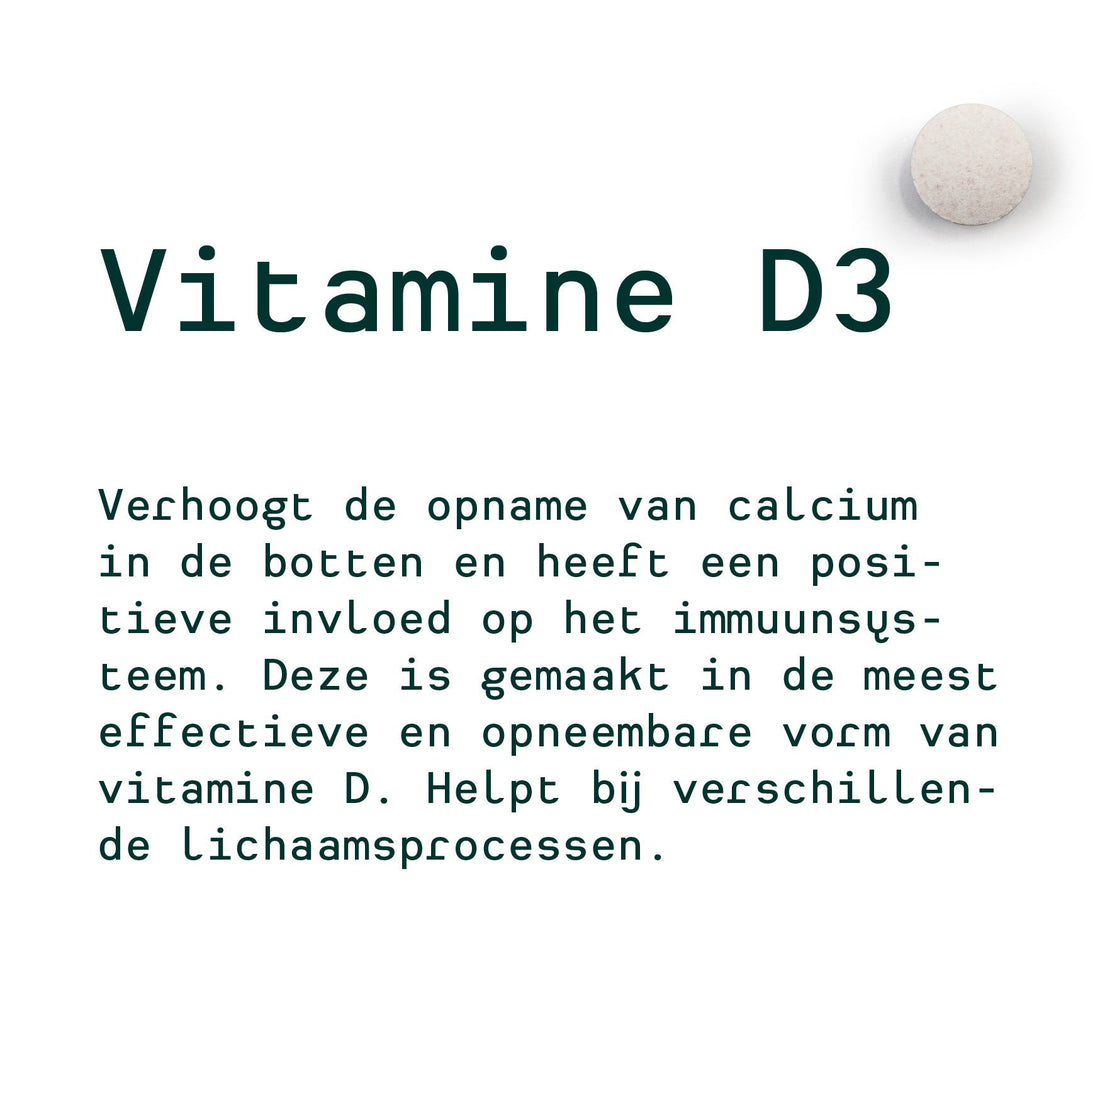 Metis Personalised van Hanne (Valerian and Melatonin, Multivit, Vitamin D3)